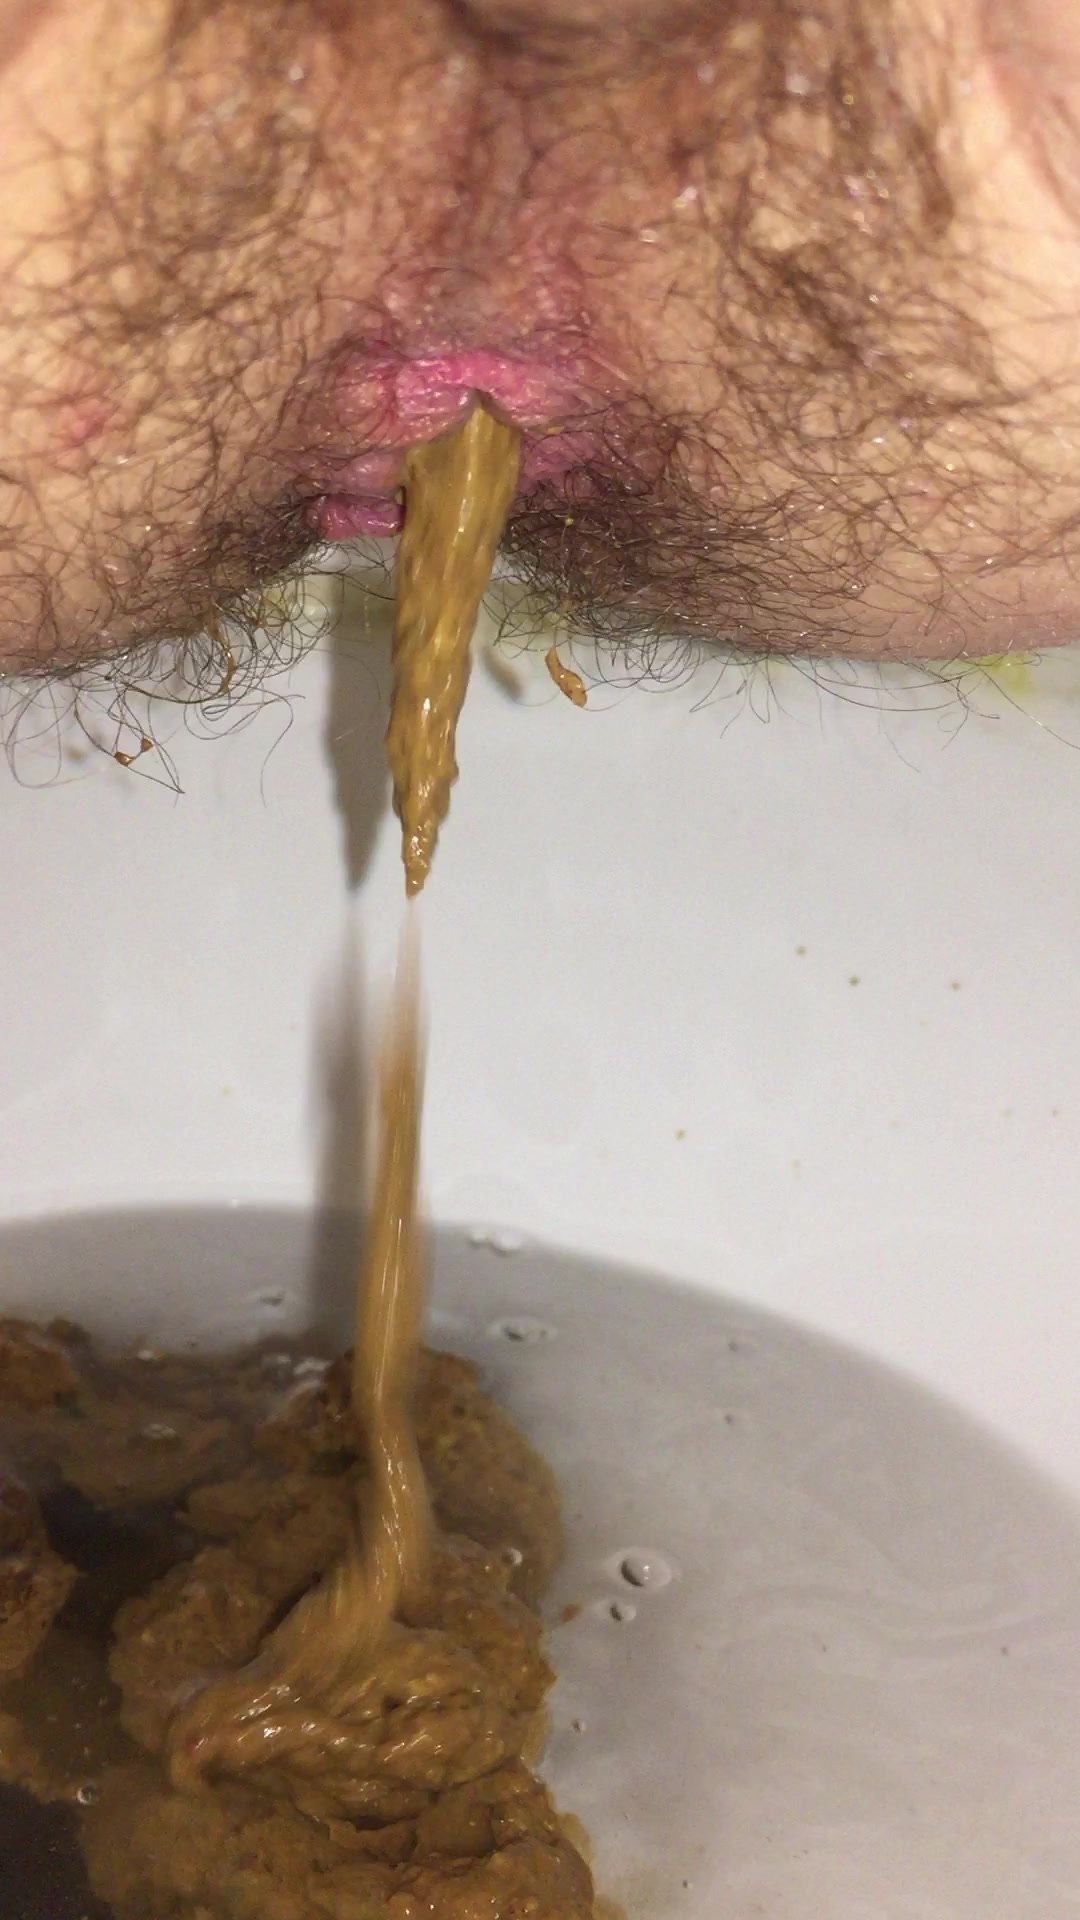 Toilet Poop 4 - video 2